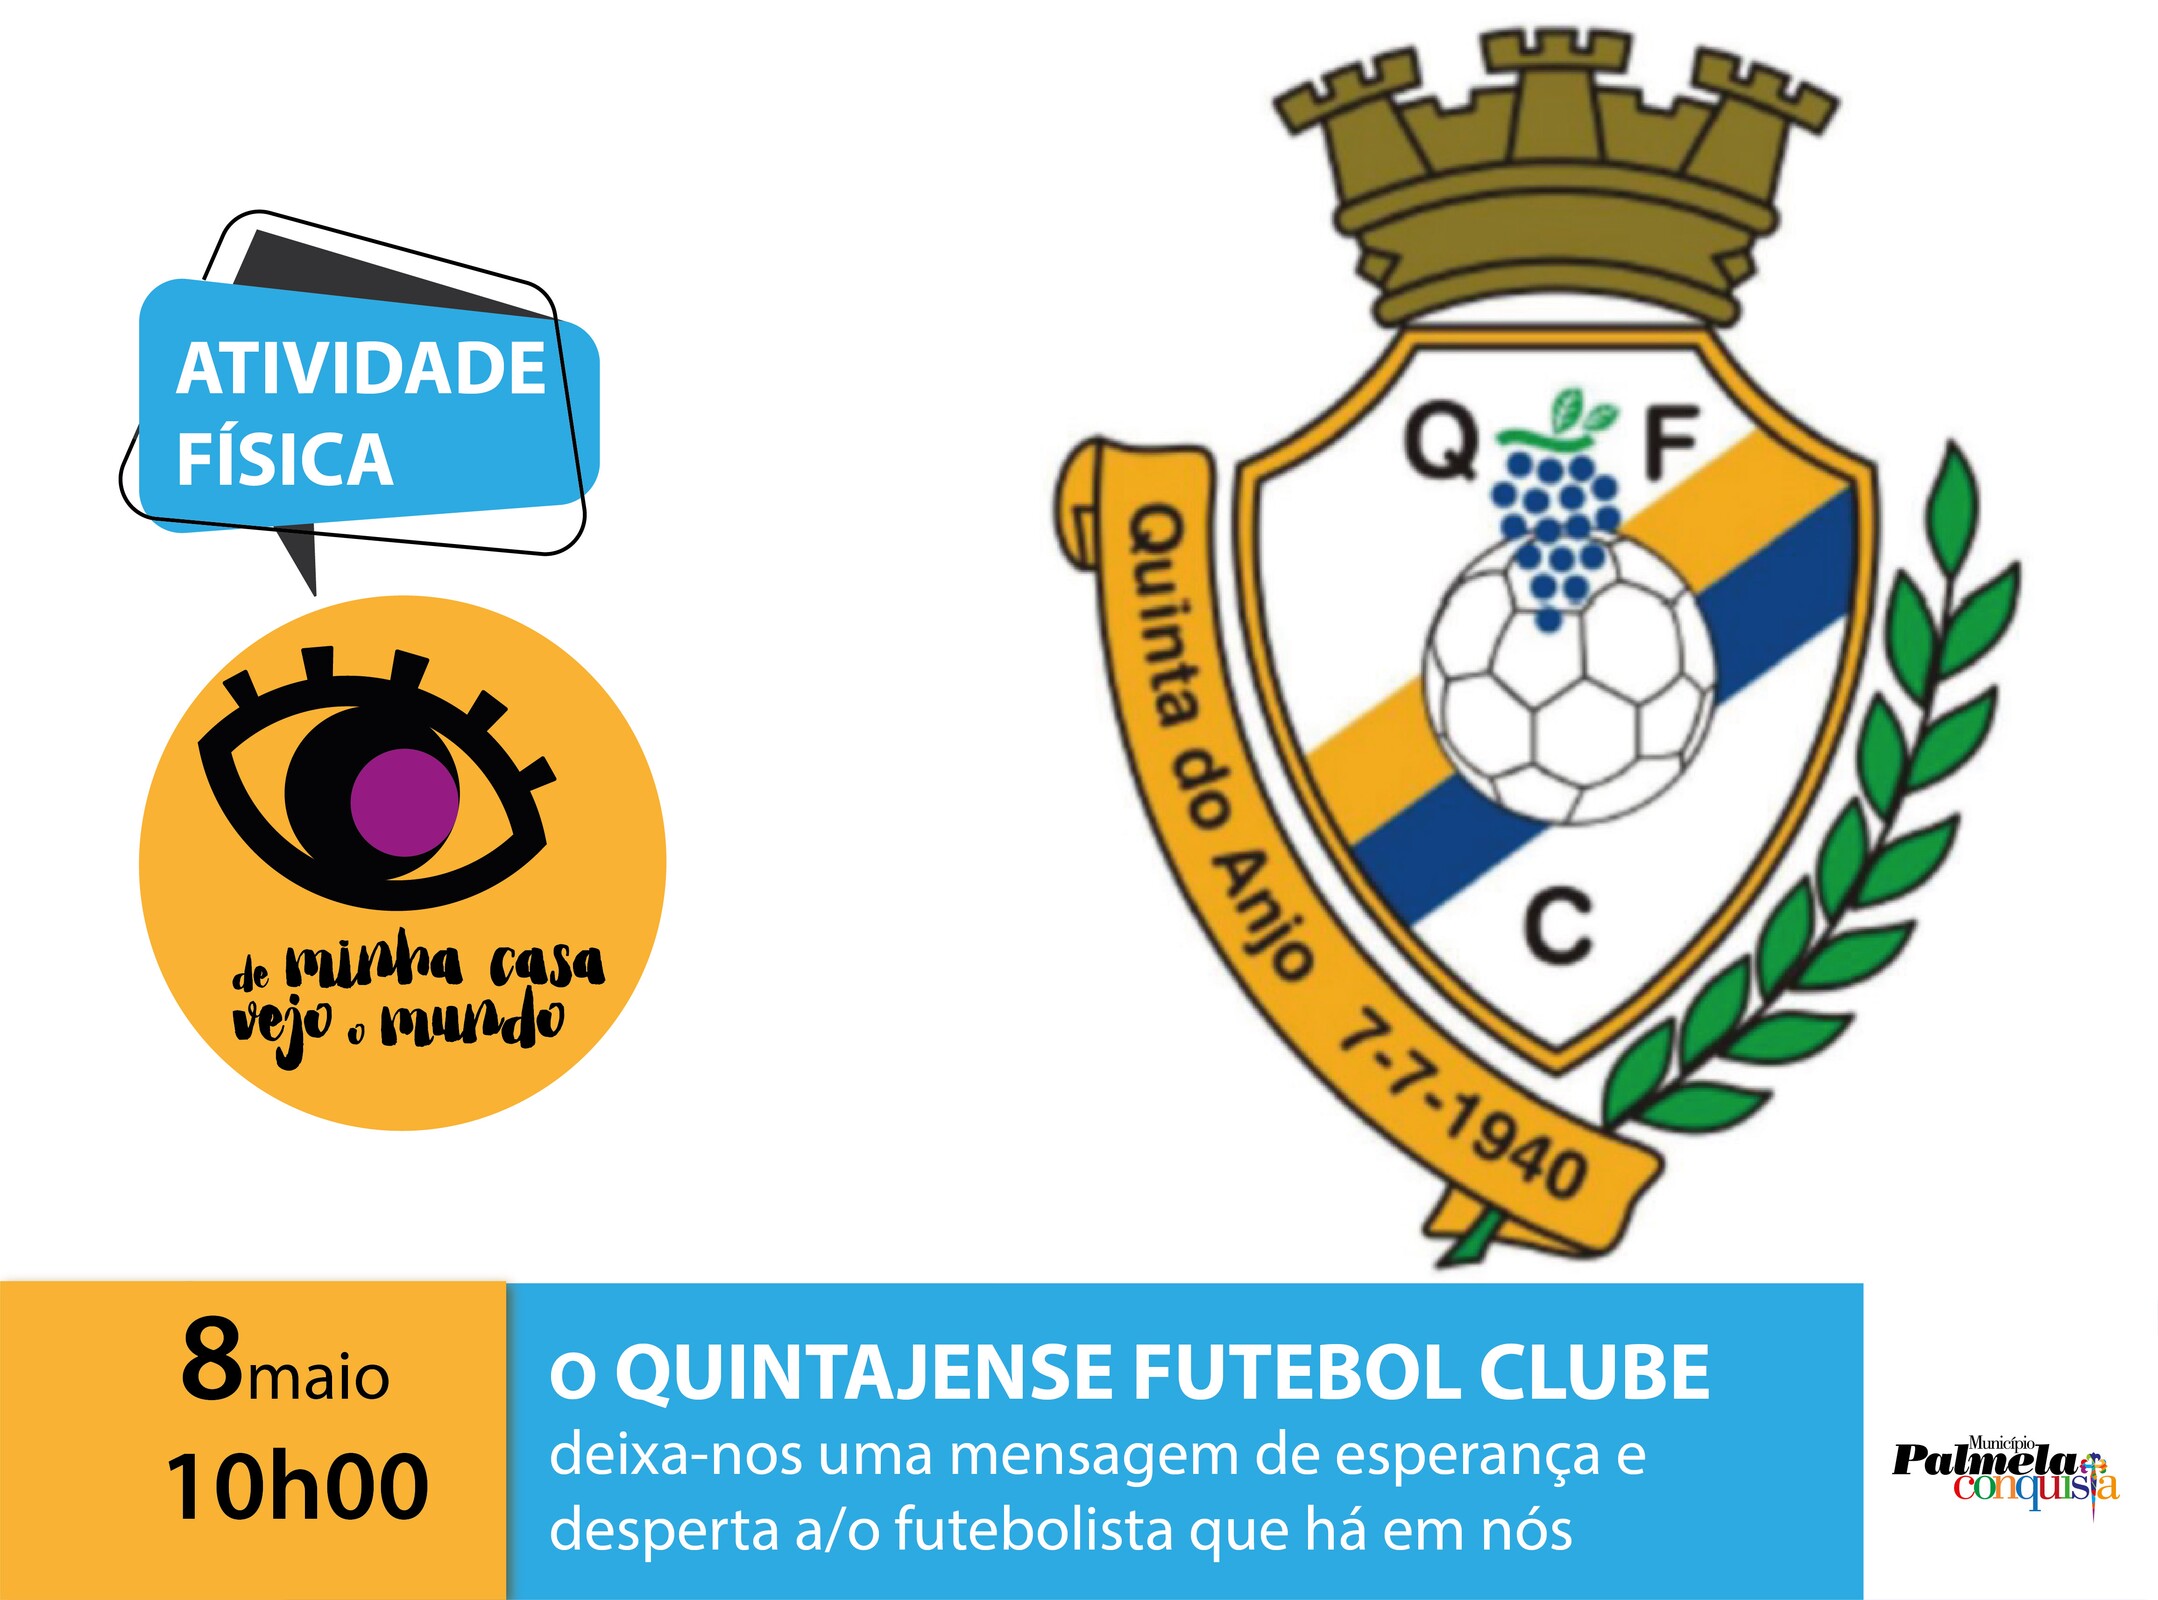 “De minha casa vejo o mundo”: Quintajense Futebol Clube deixa-lhe mensagem positiva!